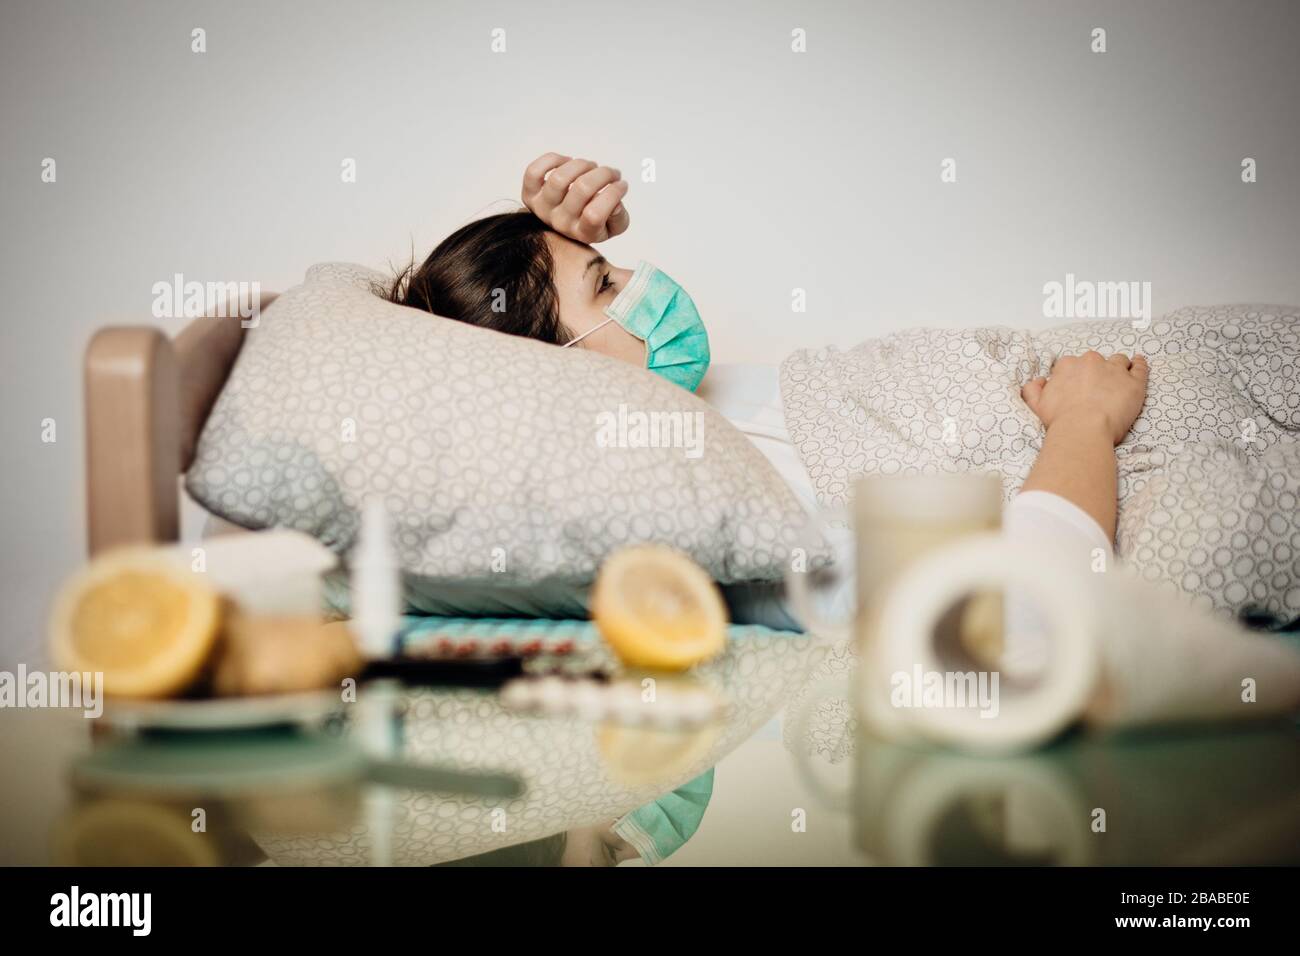 Femme malade avec masque en quarantaine lit auto-isolation.Coronavirus Covid-19 patient ayant des symptômes de pneumonie maladie.prévention et traitement des soins de santé Banque D'Images